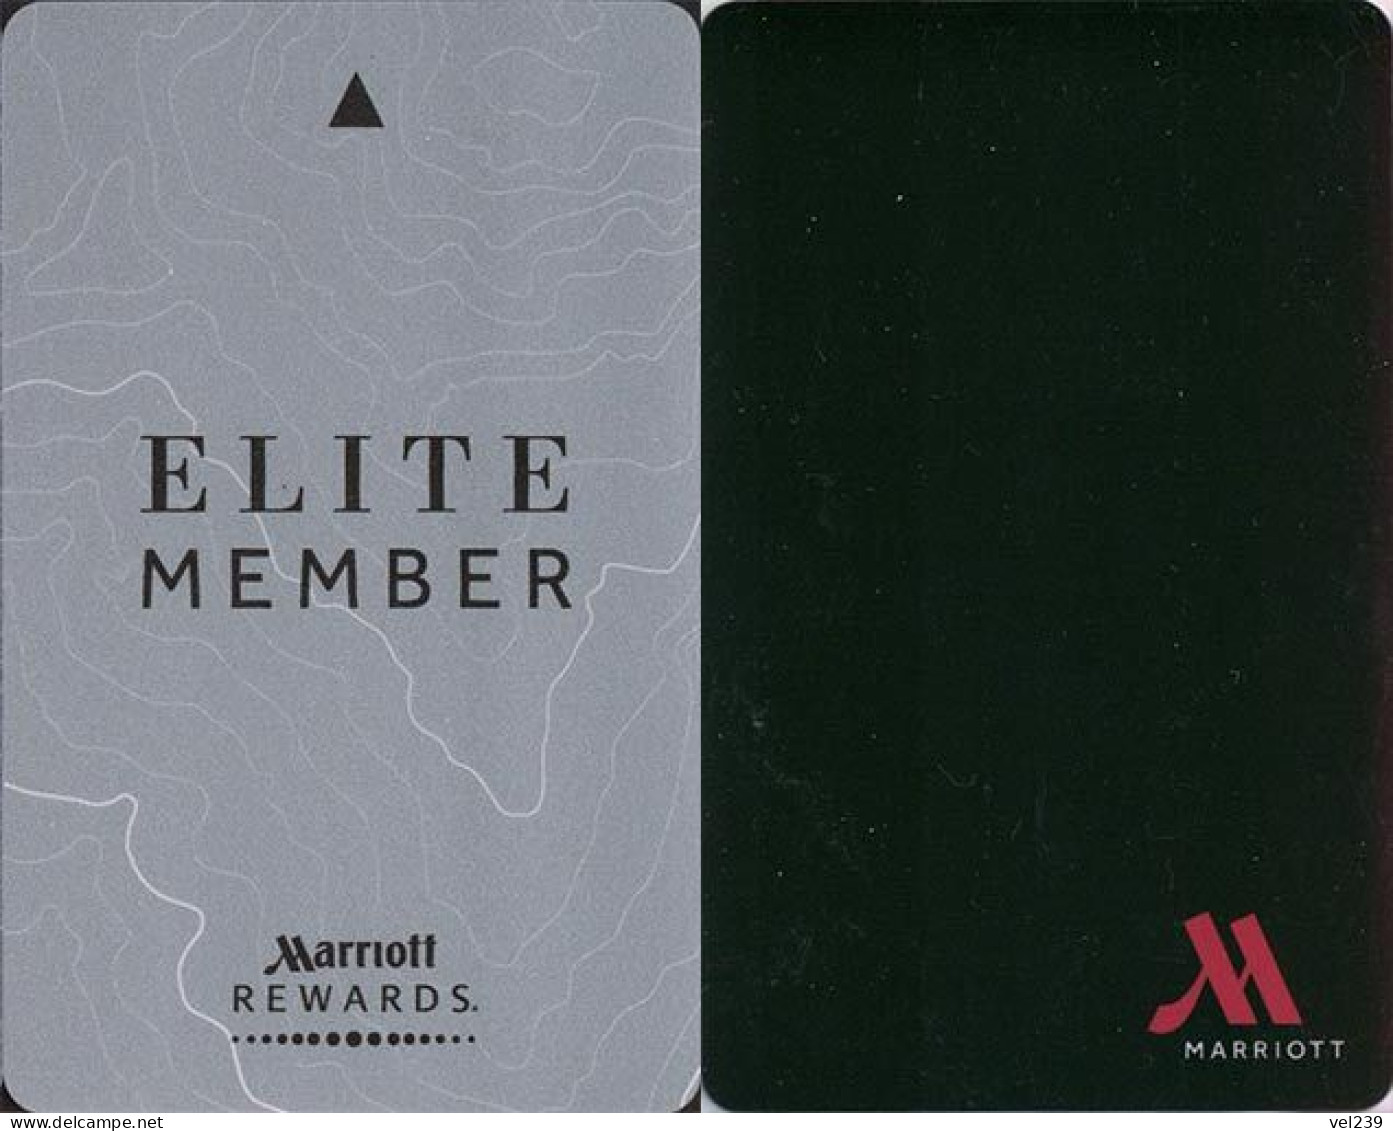 Marriott Rewards. Elite Member - Hotelkarten